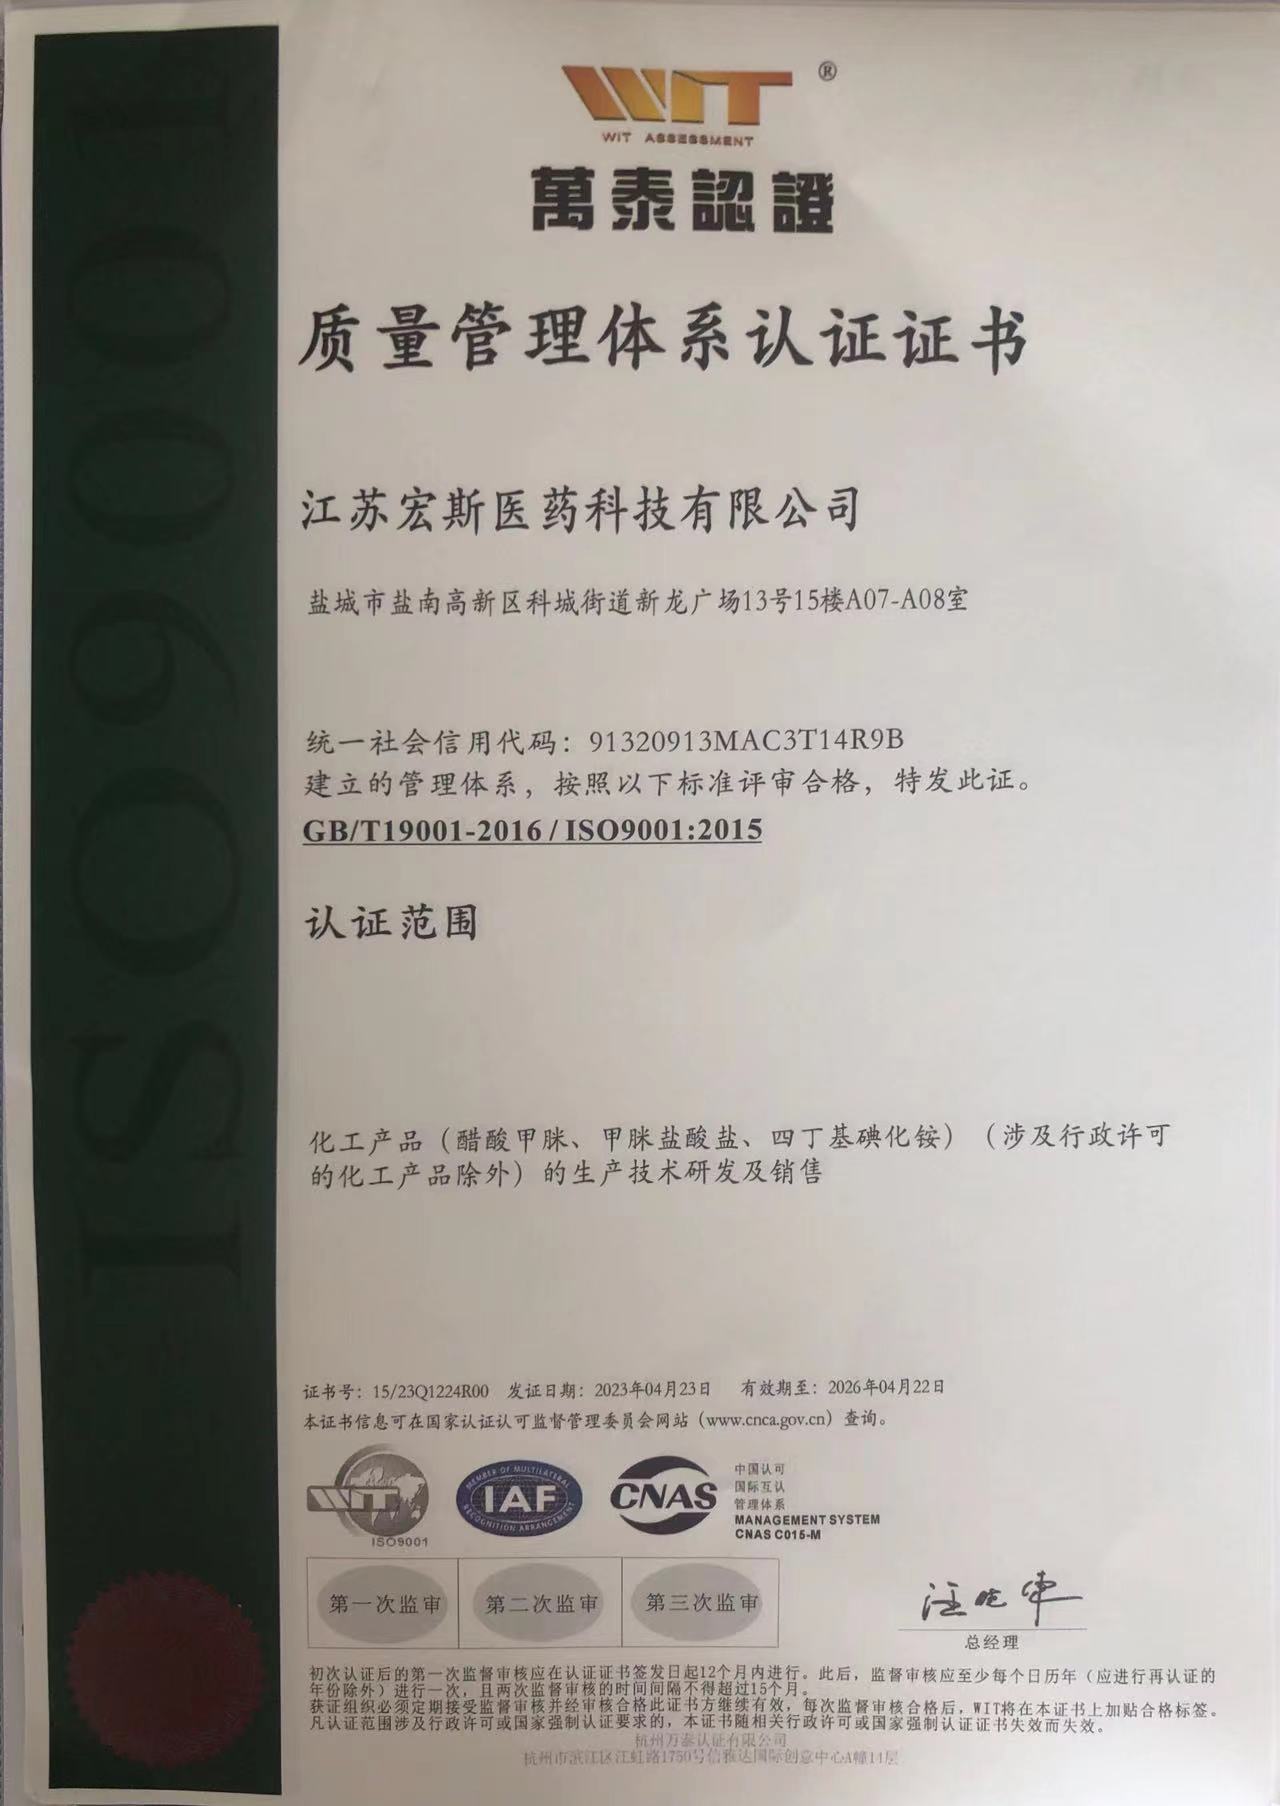 Srdačno slavimo Jiangsu Hongsi Medical Technology Co., Ltd. uspješno je prošao ISO9001:2015 međunarodni certifikat sistema kvalitete